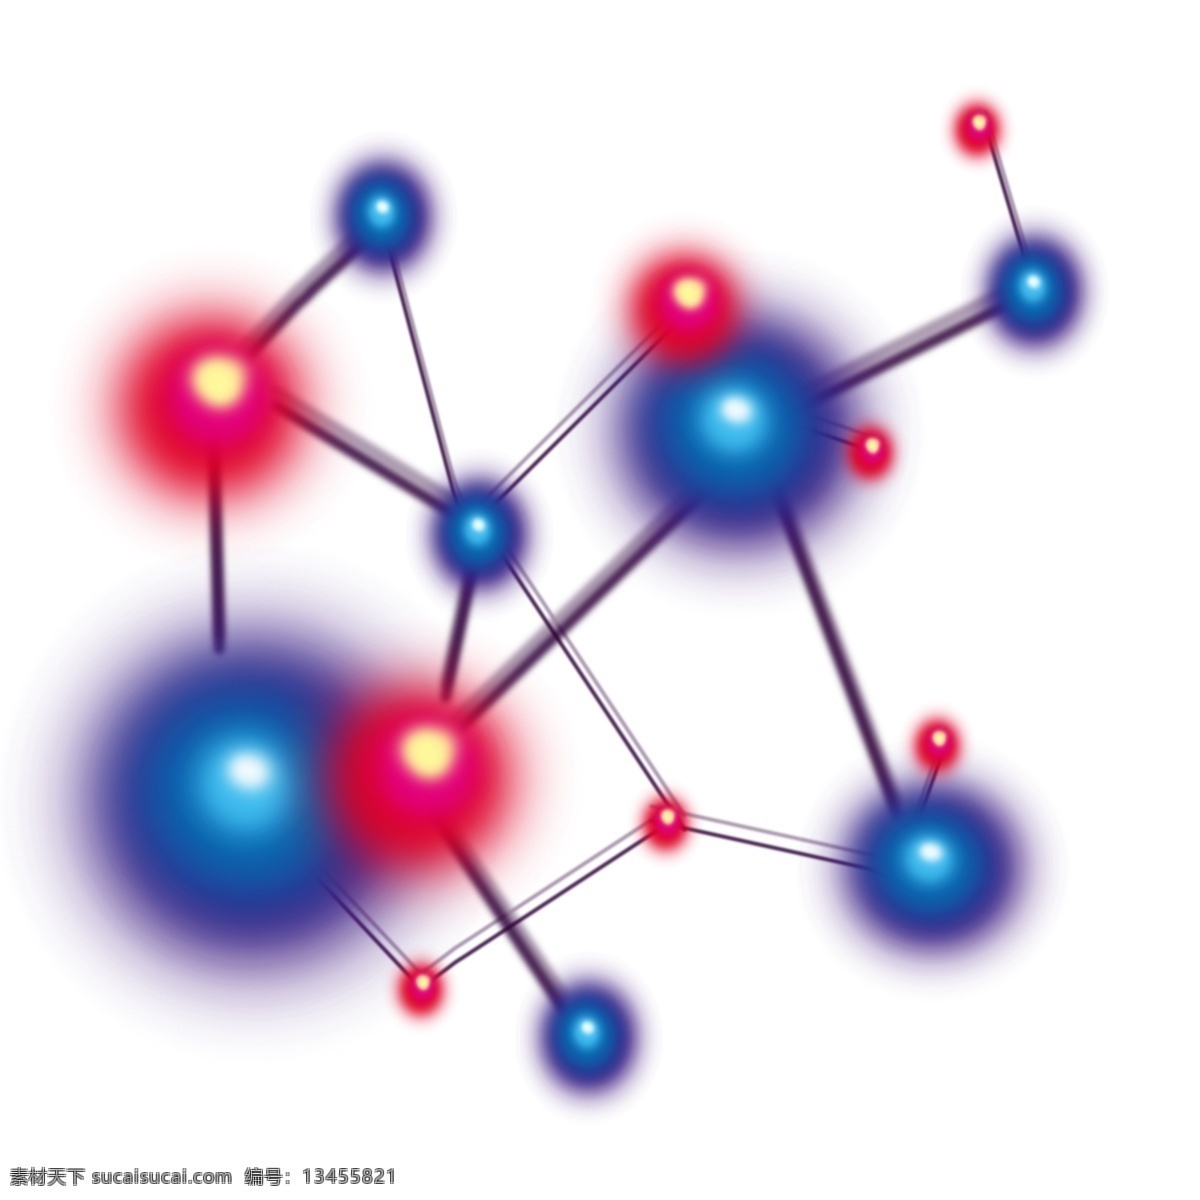 化学 组织 卡通 插画 化学的组织 卡通插画 化学插画 化学药品 化学分子 化学原子 分散的分子